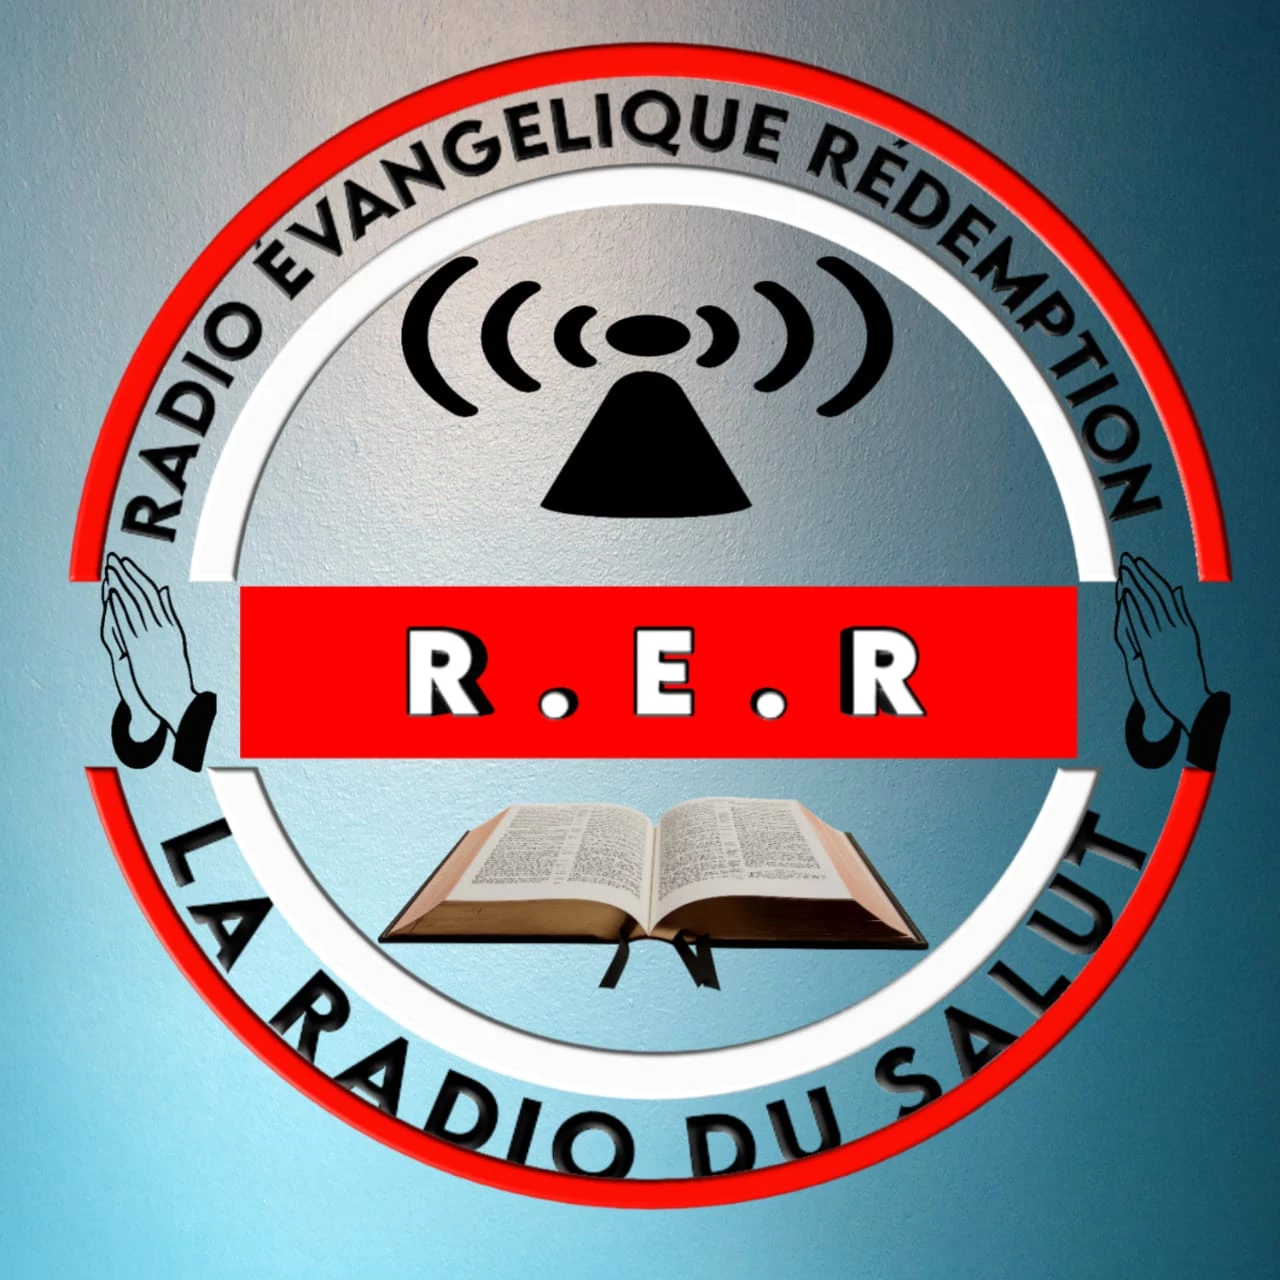 Radio Évangélique la Rédemption